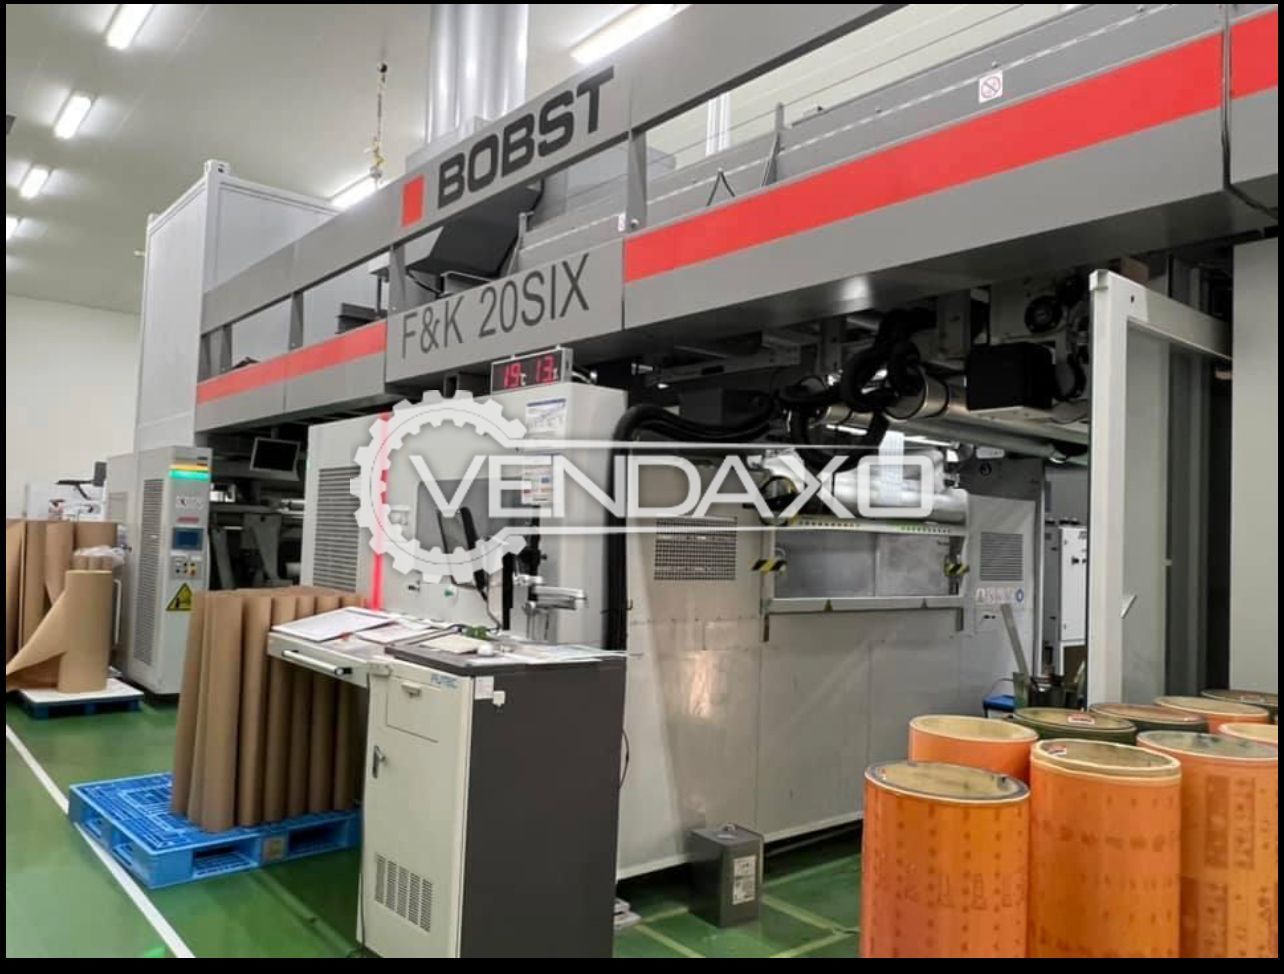 BOBST F&K 20SIX Flexo Printing Machine - Max Width - 1250 mm, 2013 Model